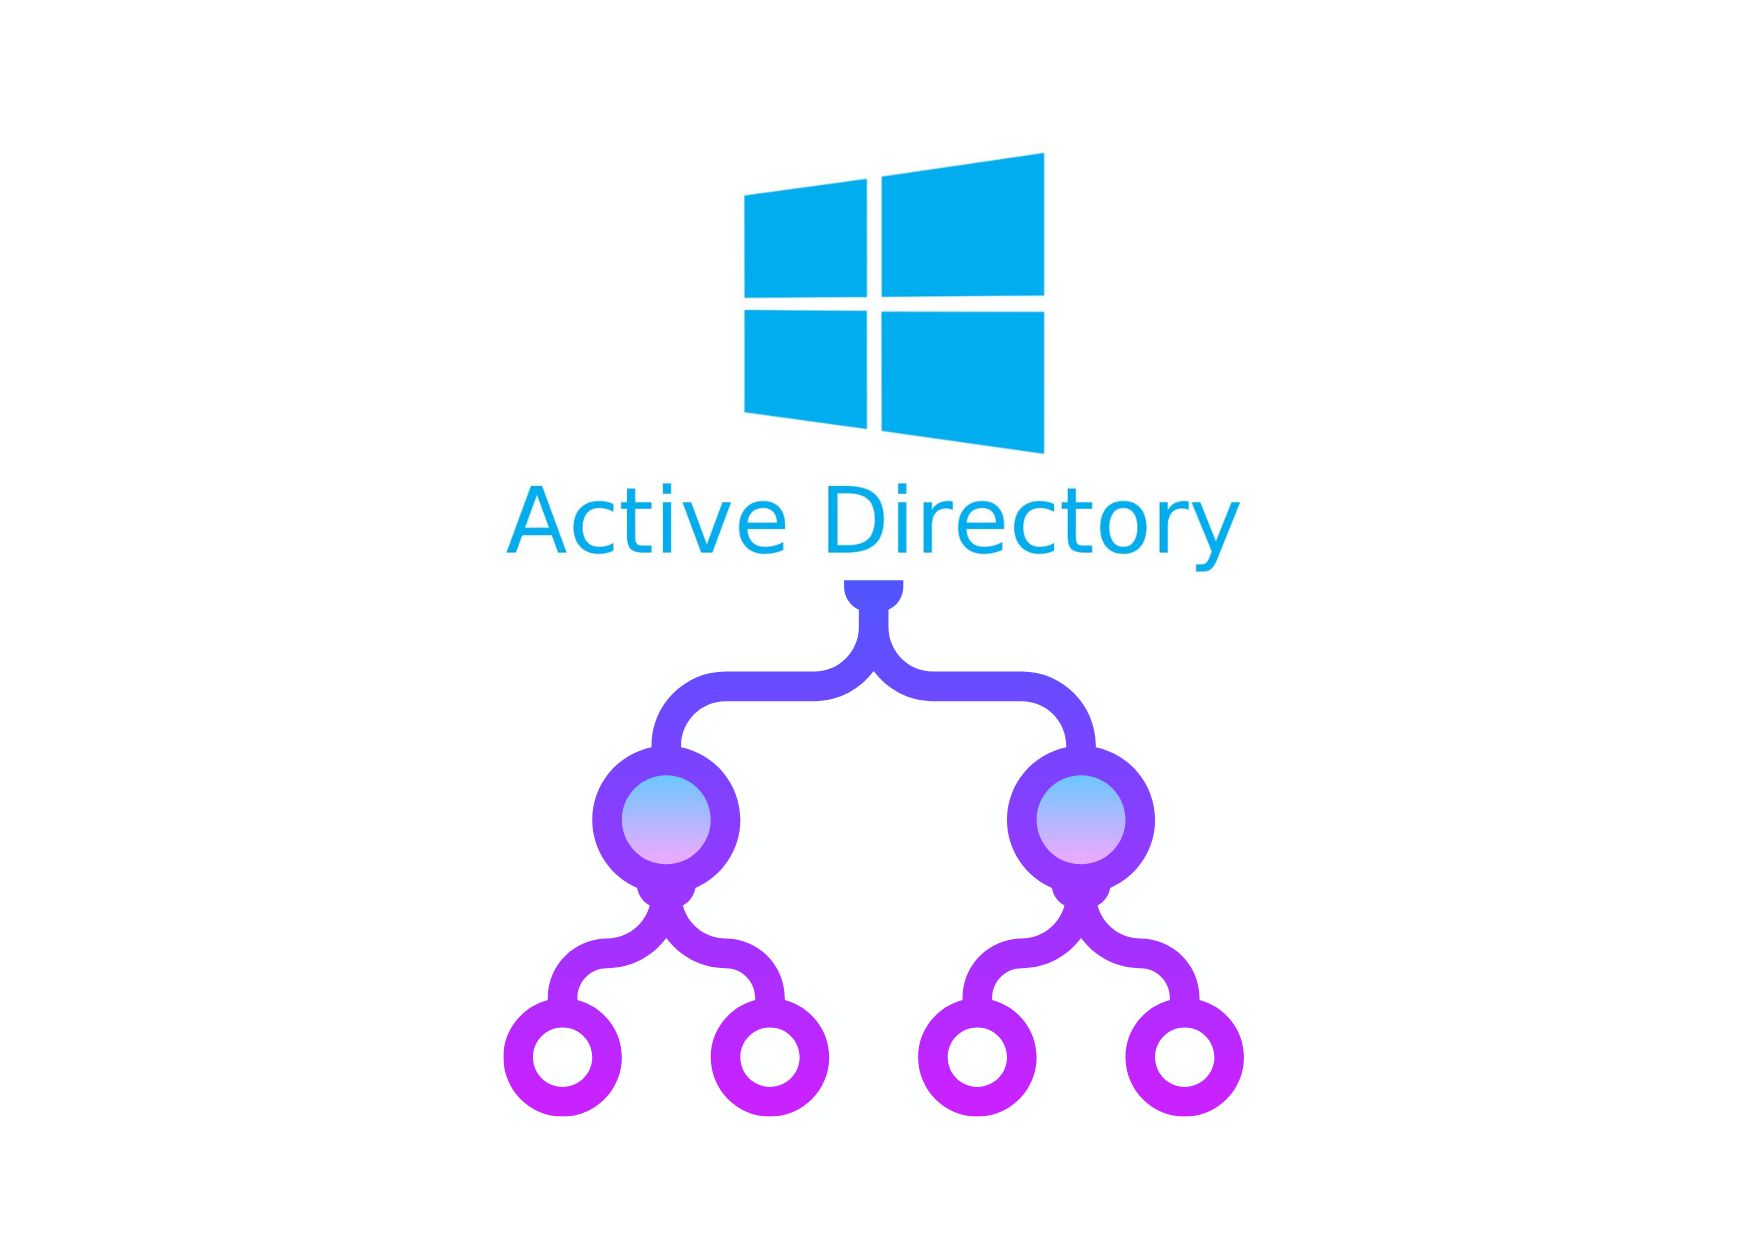 Come difendere Active Directory dagli attacchi: pratici consigli